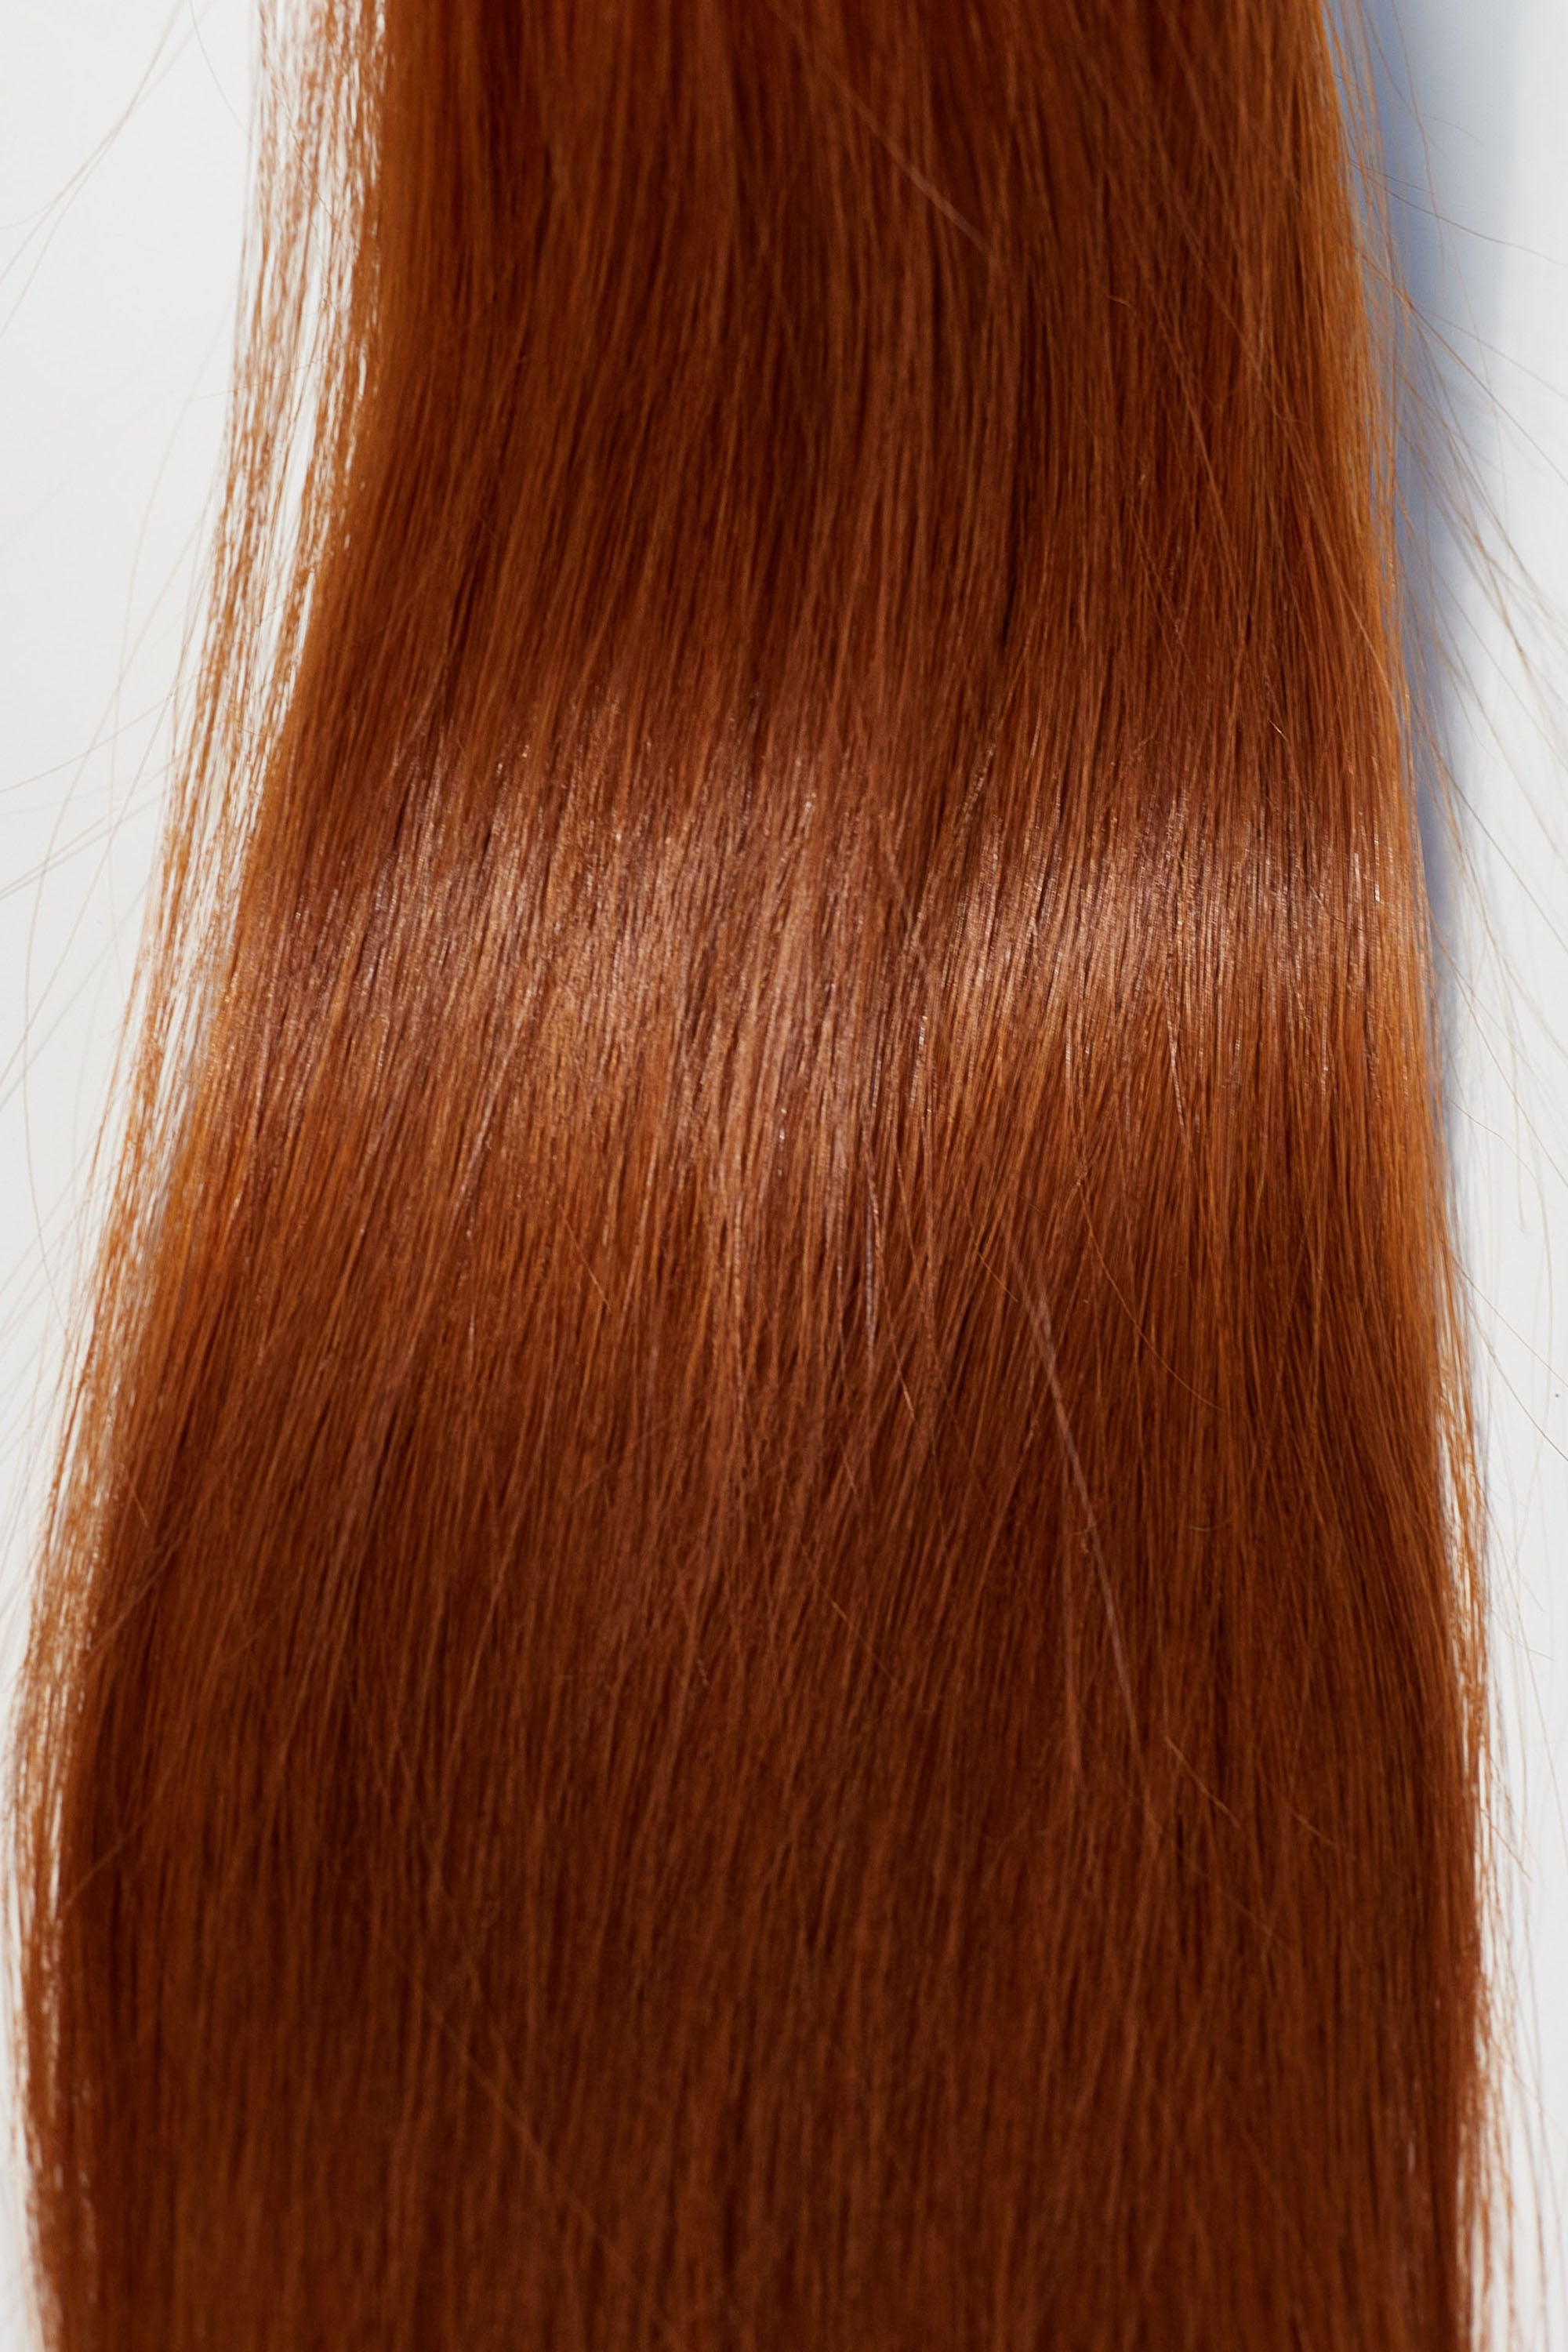 Behair professional Bulk hair "Premium" 28" (70cm) Natural Straight Brilliant Copper #130 - 25g hair extensions